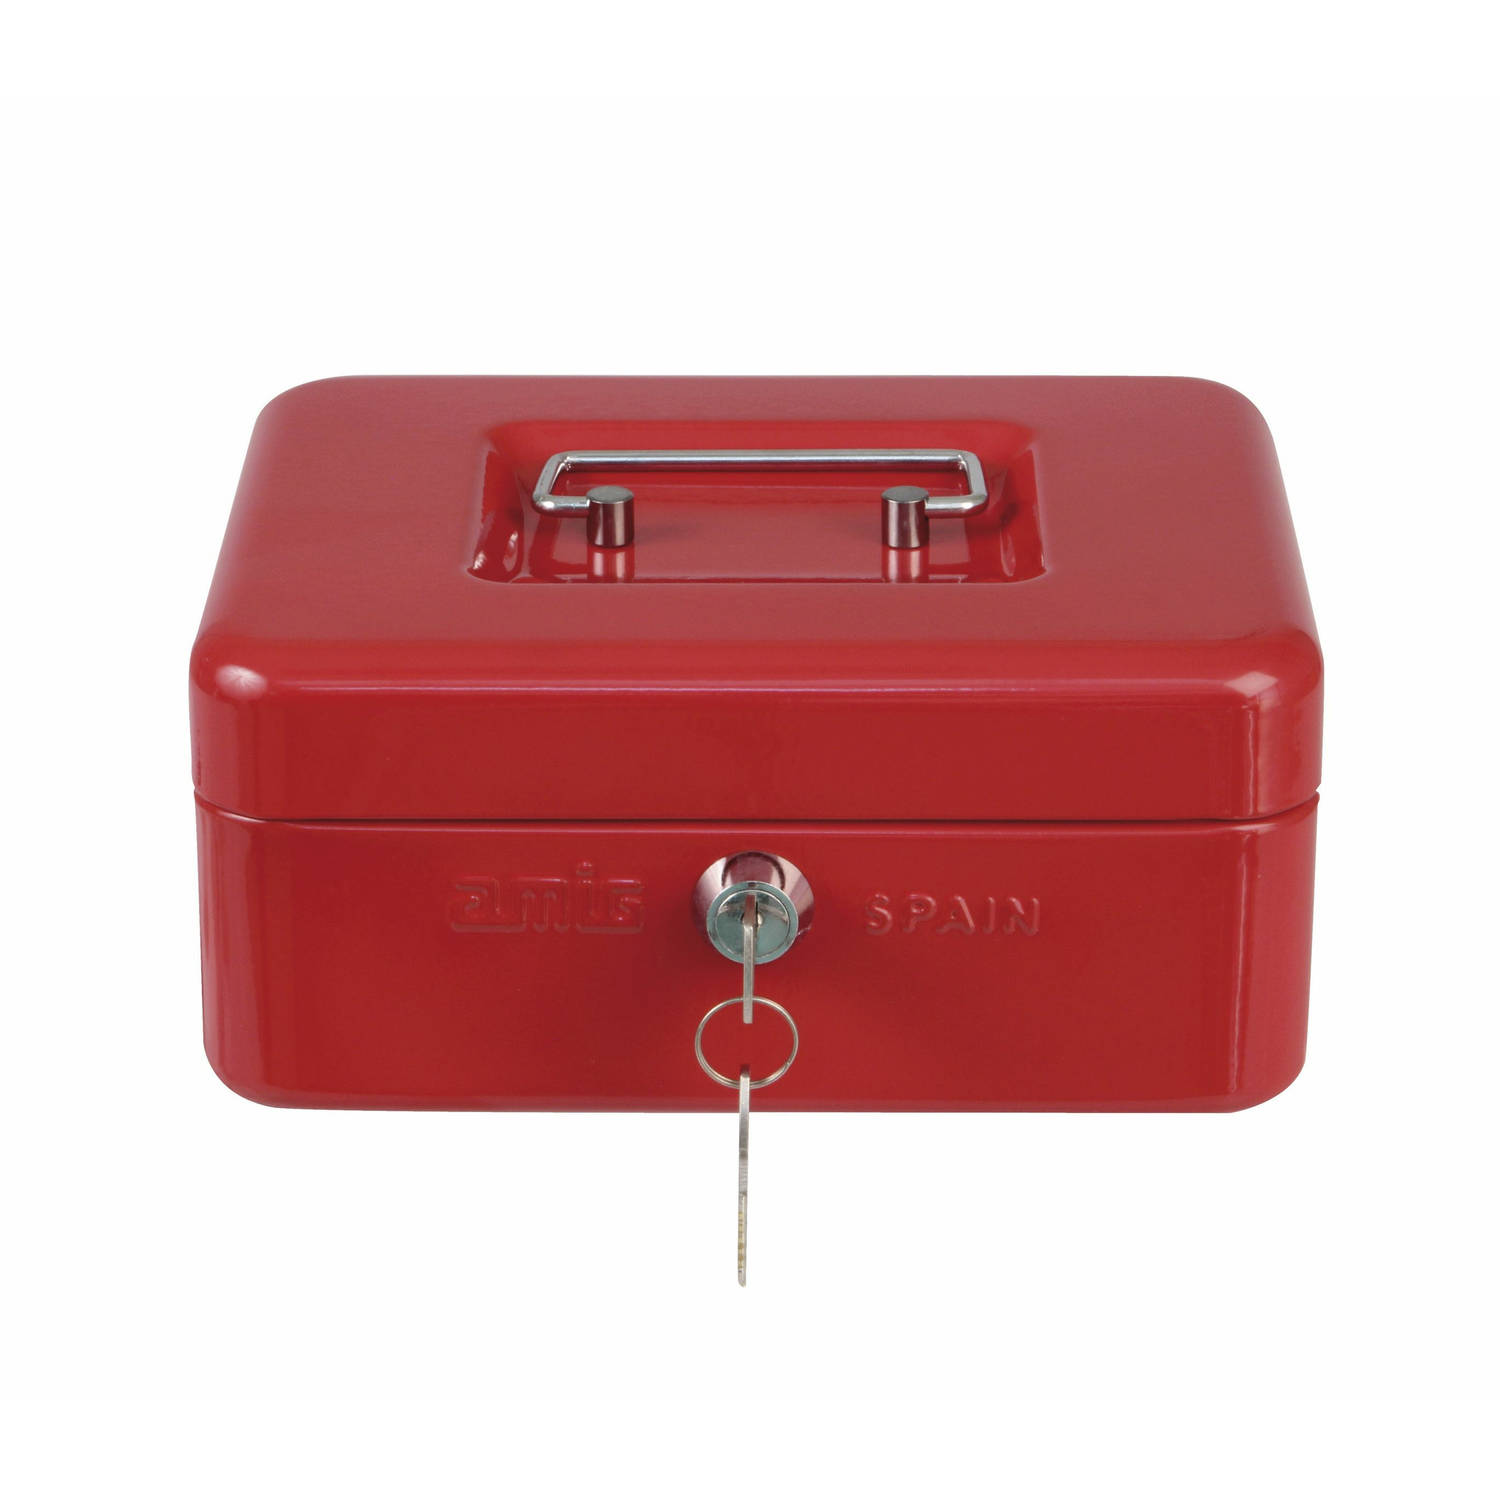 AMIG Geldkistje met 2 sleutels - rood - staal - muntbakje - 20 x 16 x 9 cm - inbraakbeveiliging